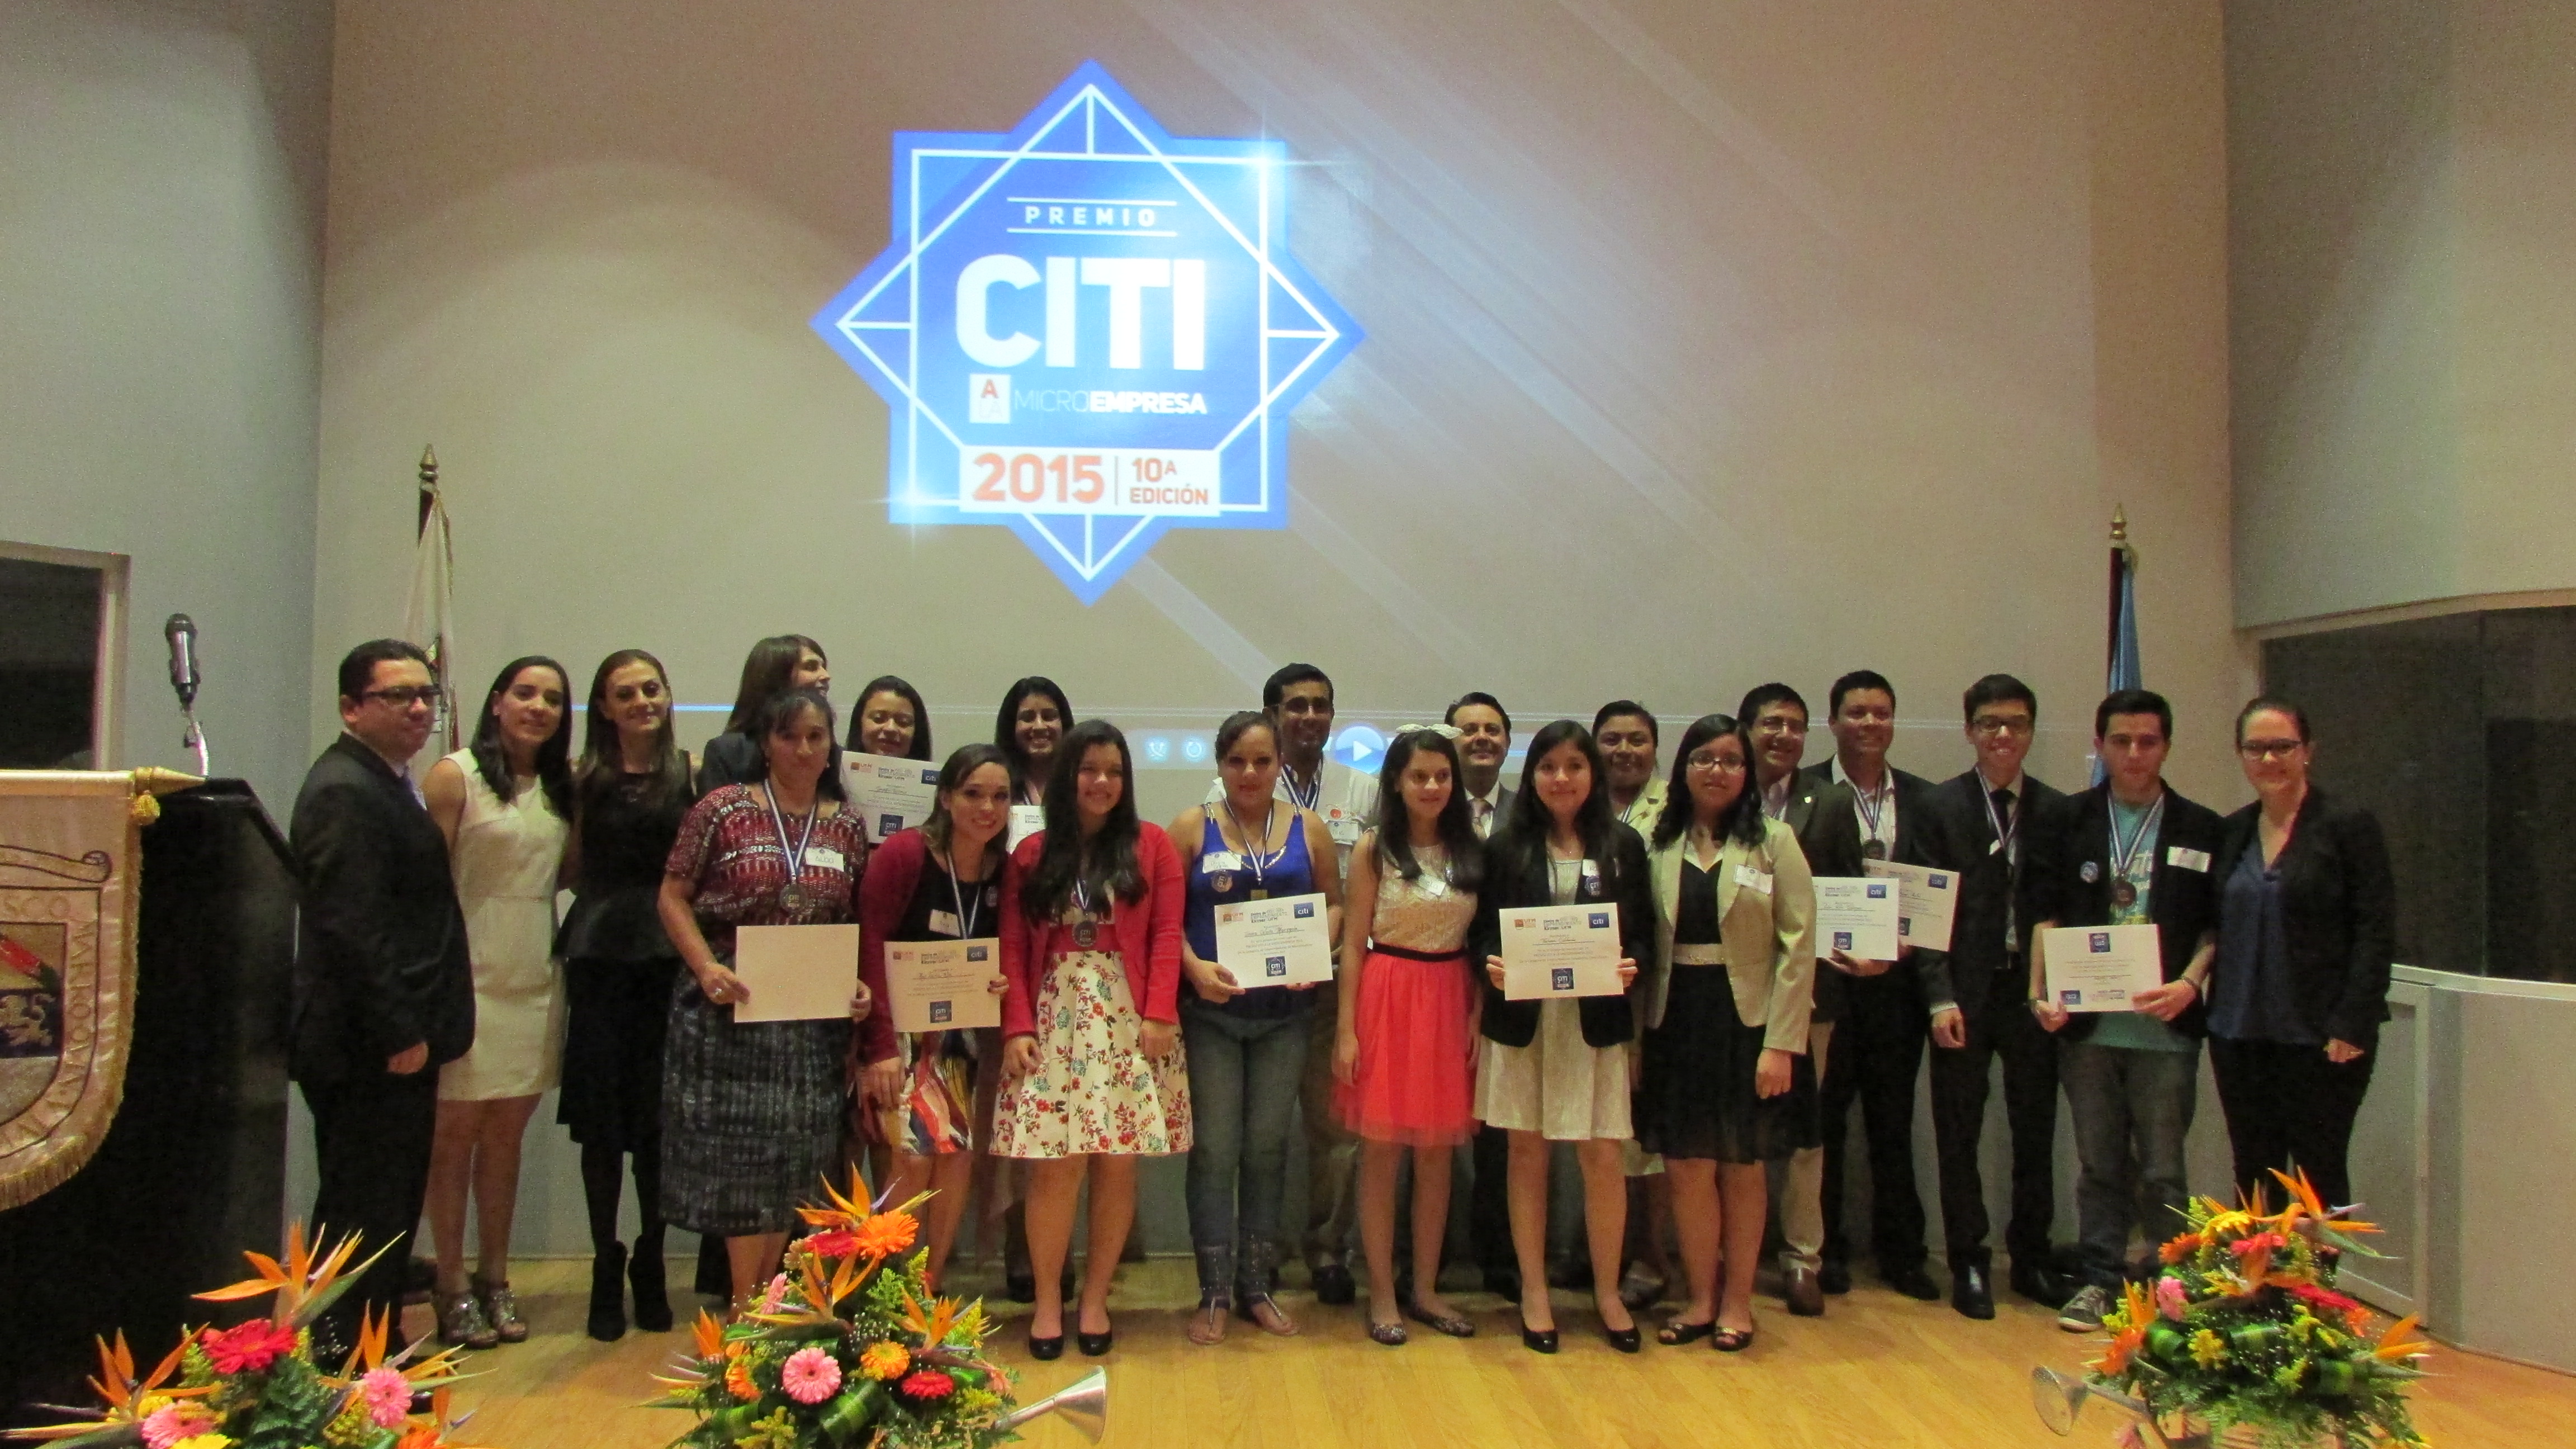 Premio Citi reconoce a 12 emprendedores guatemaltecos